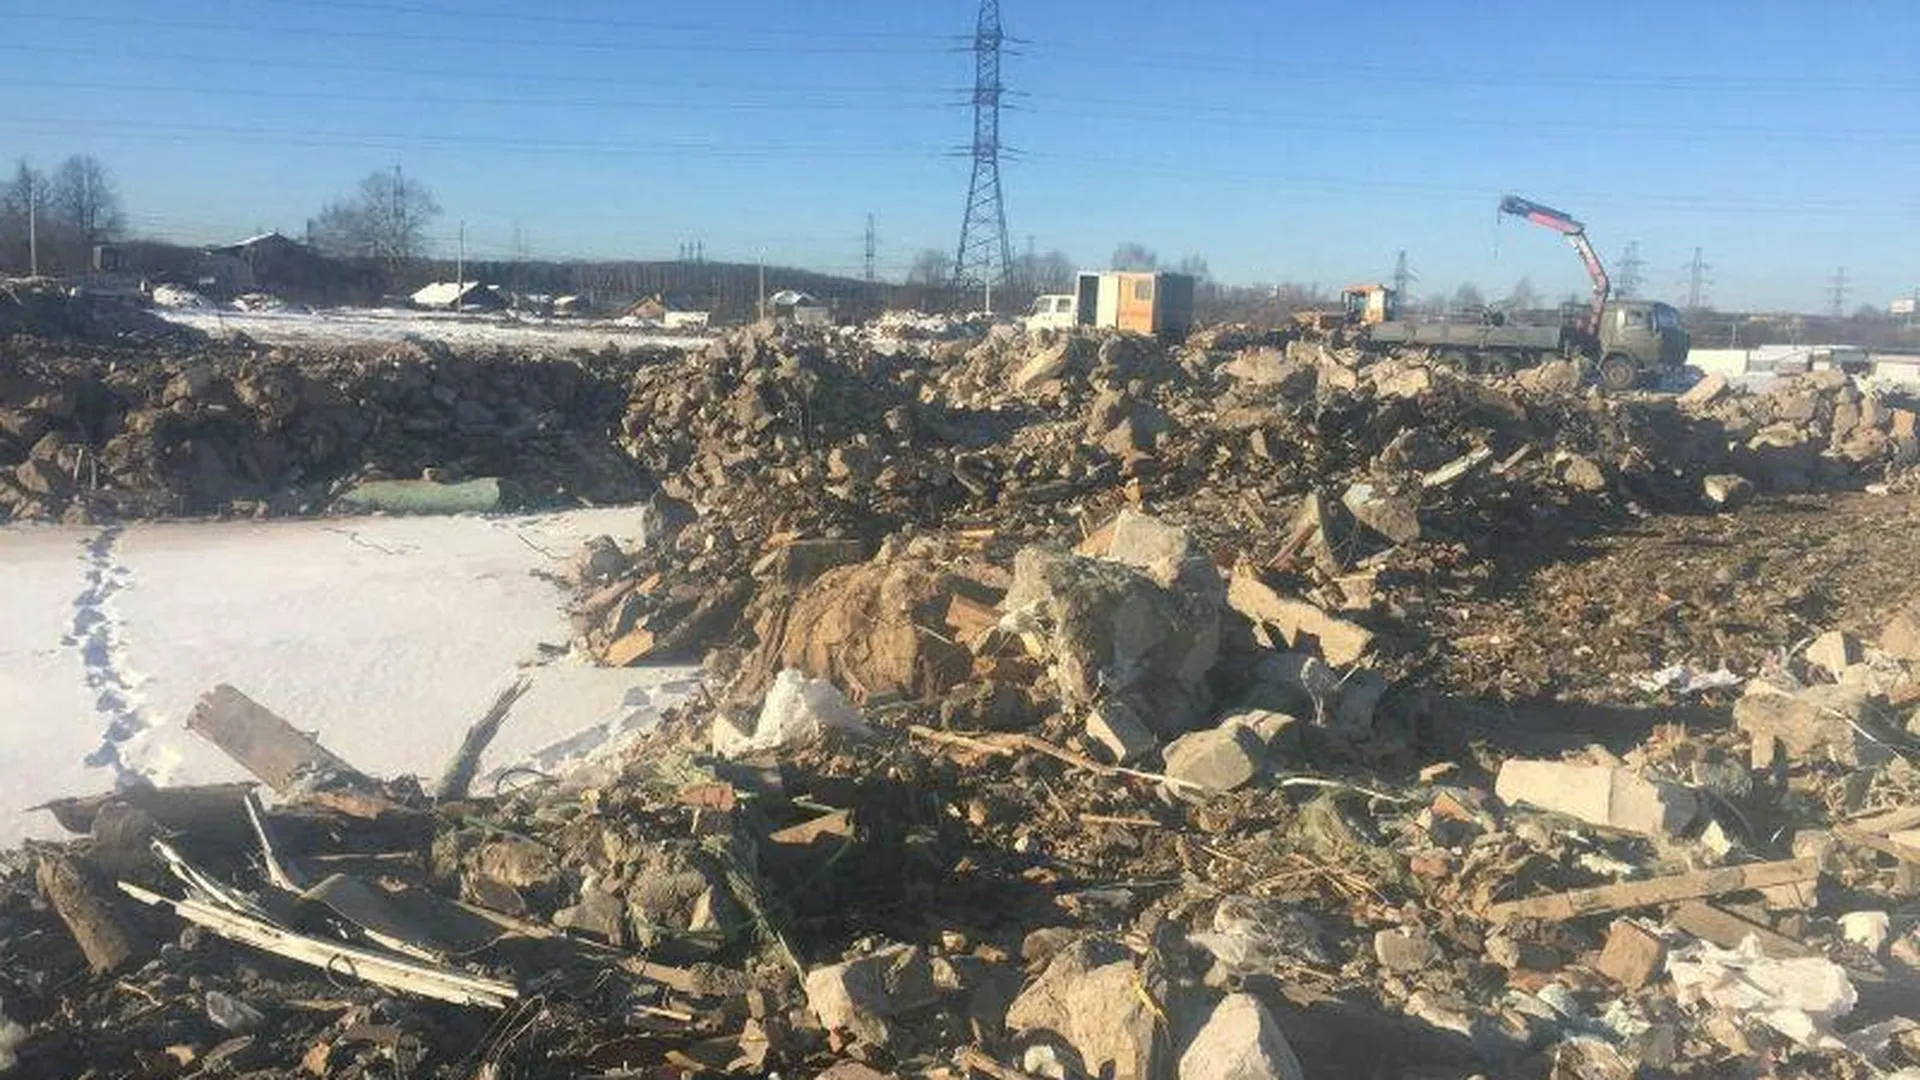 Незаконную выгрузку строительного мусора пресекли инспекторы Минэкологии в Мытищах